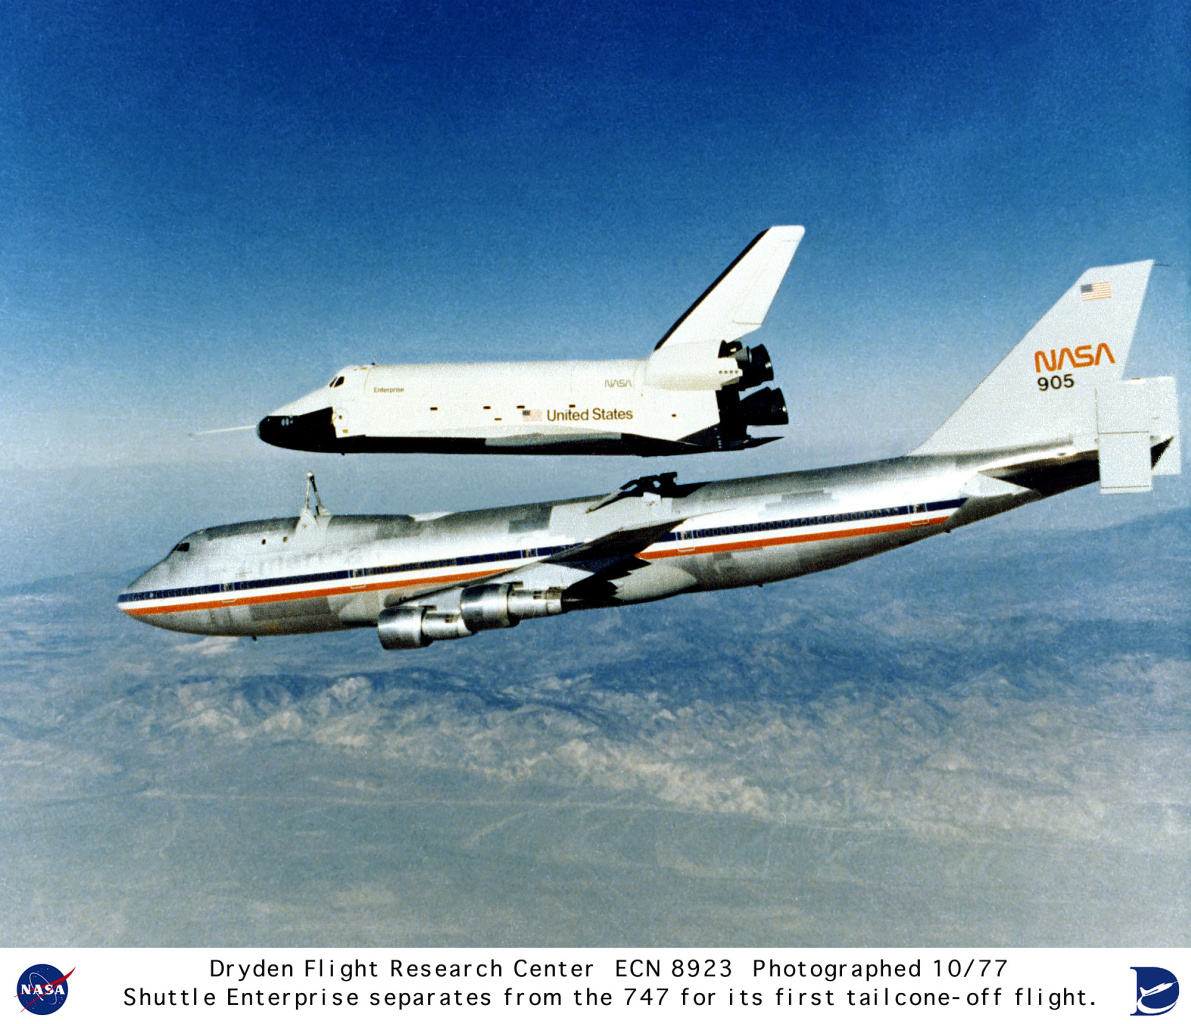 Shuttle leaves 747